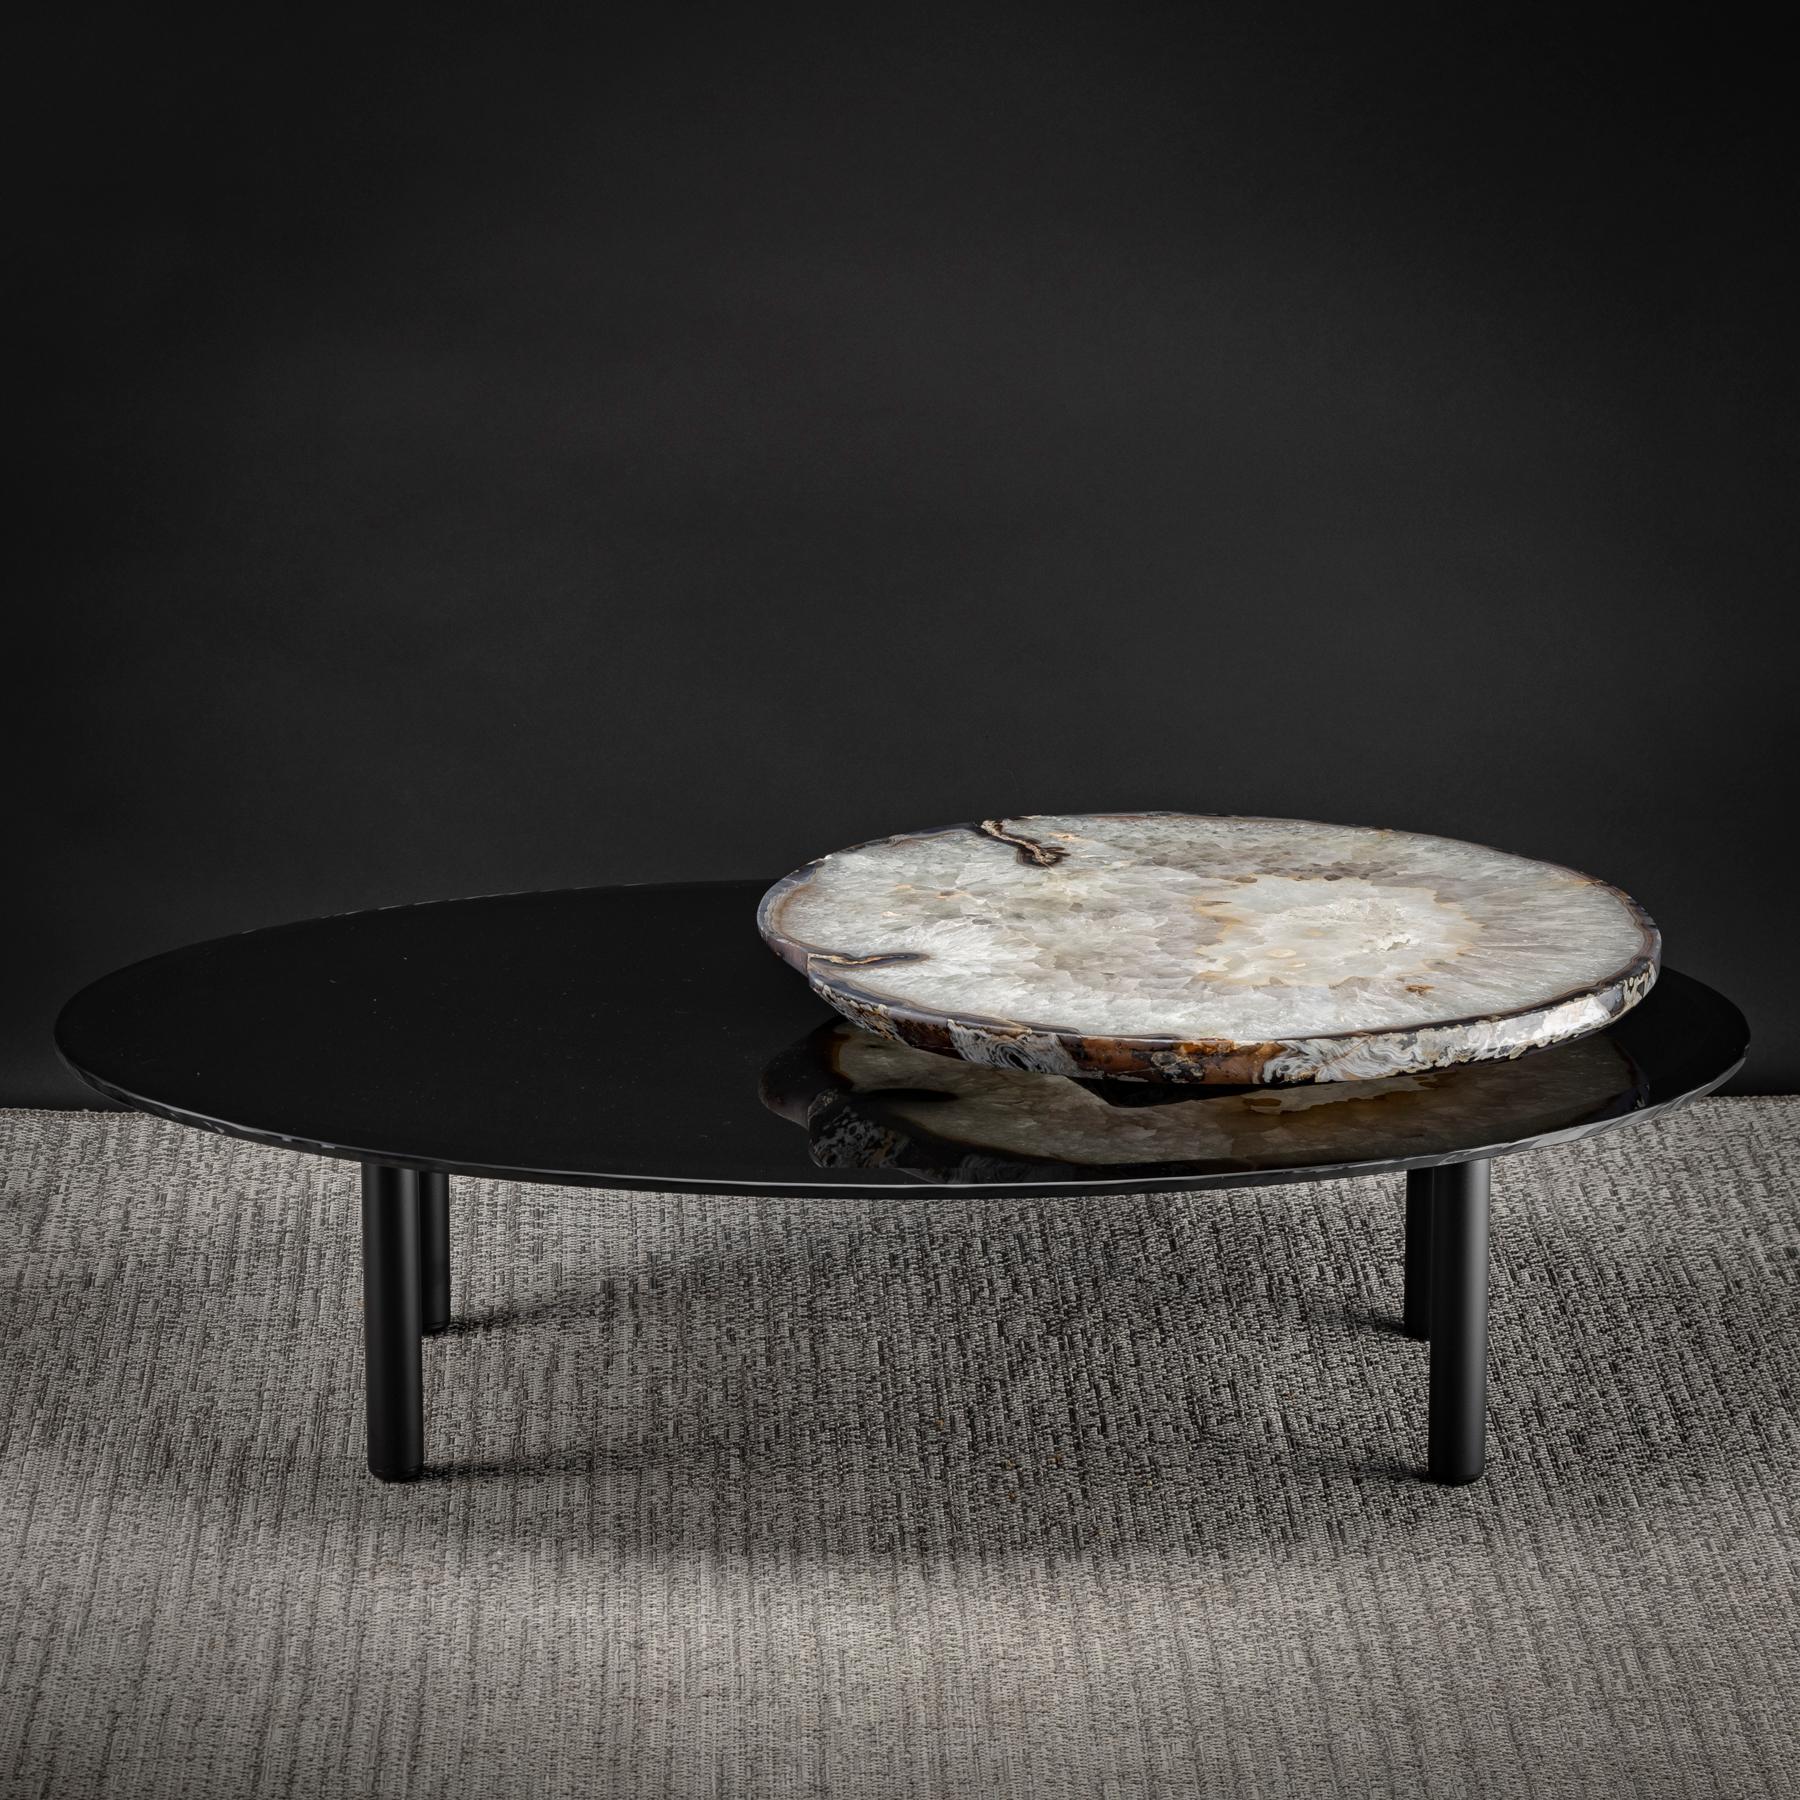 Cette table centrale est un modèle original comprenant une agate brésilienne (agate rotative) 